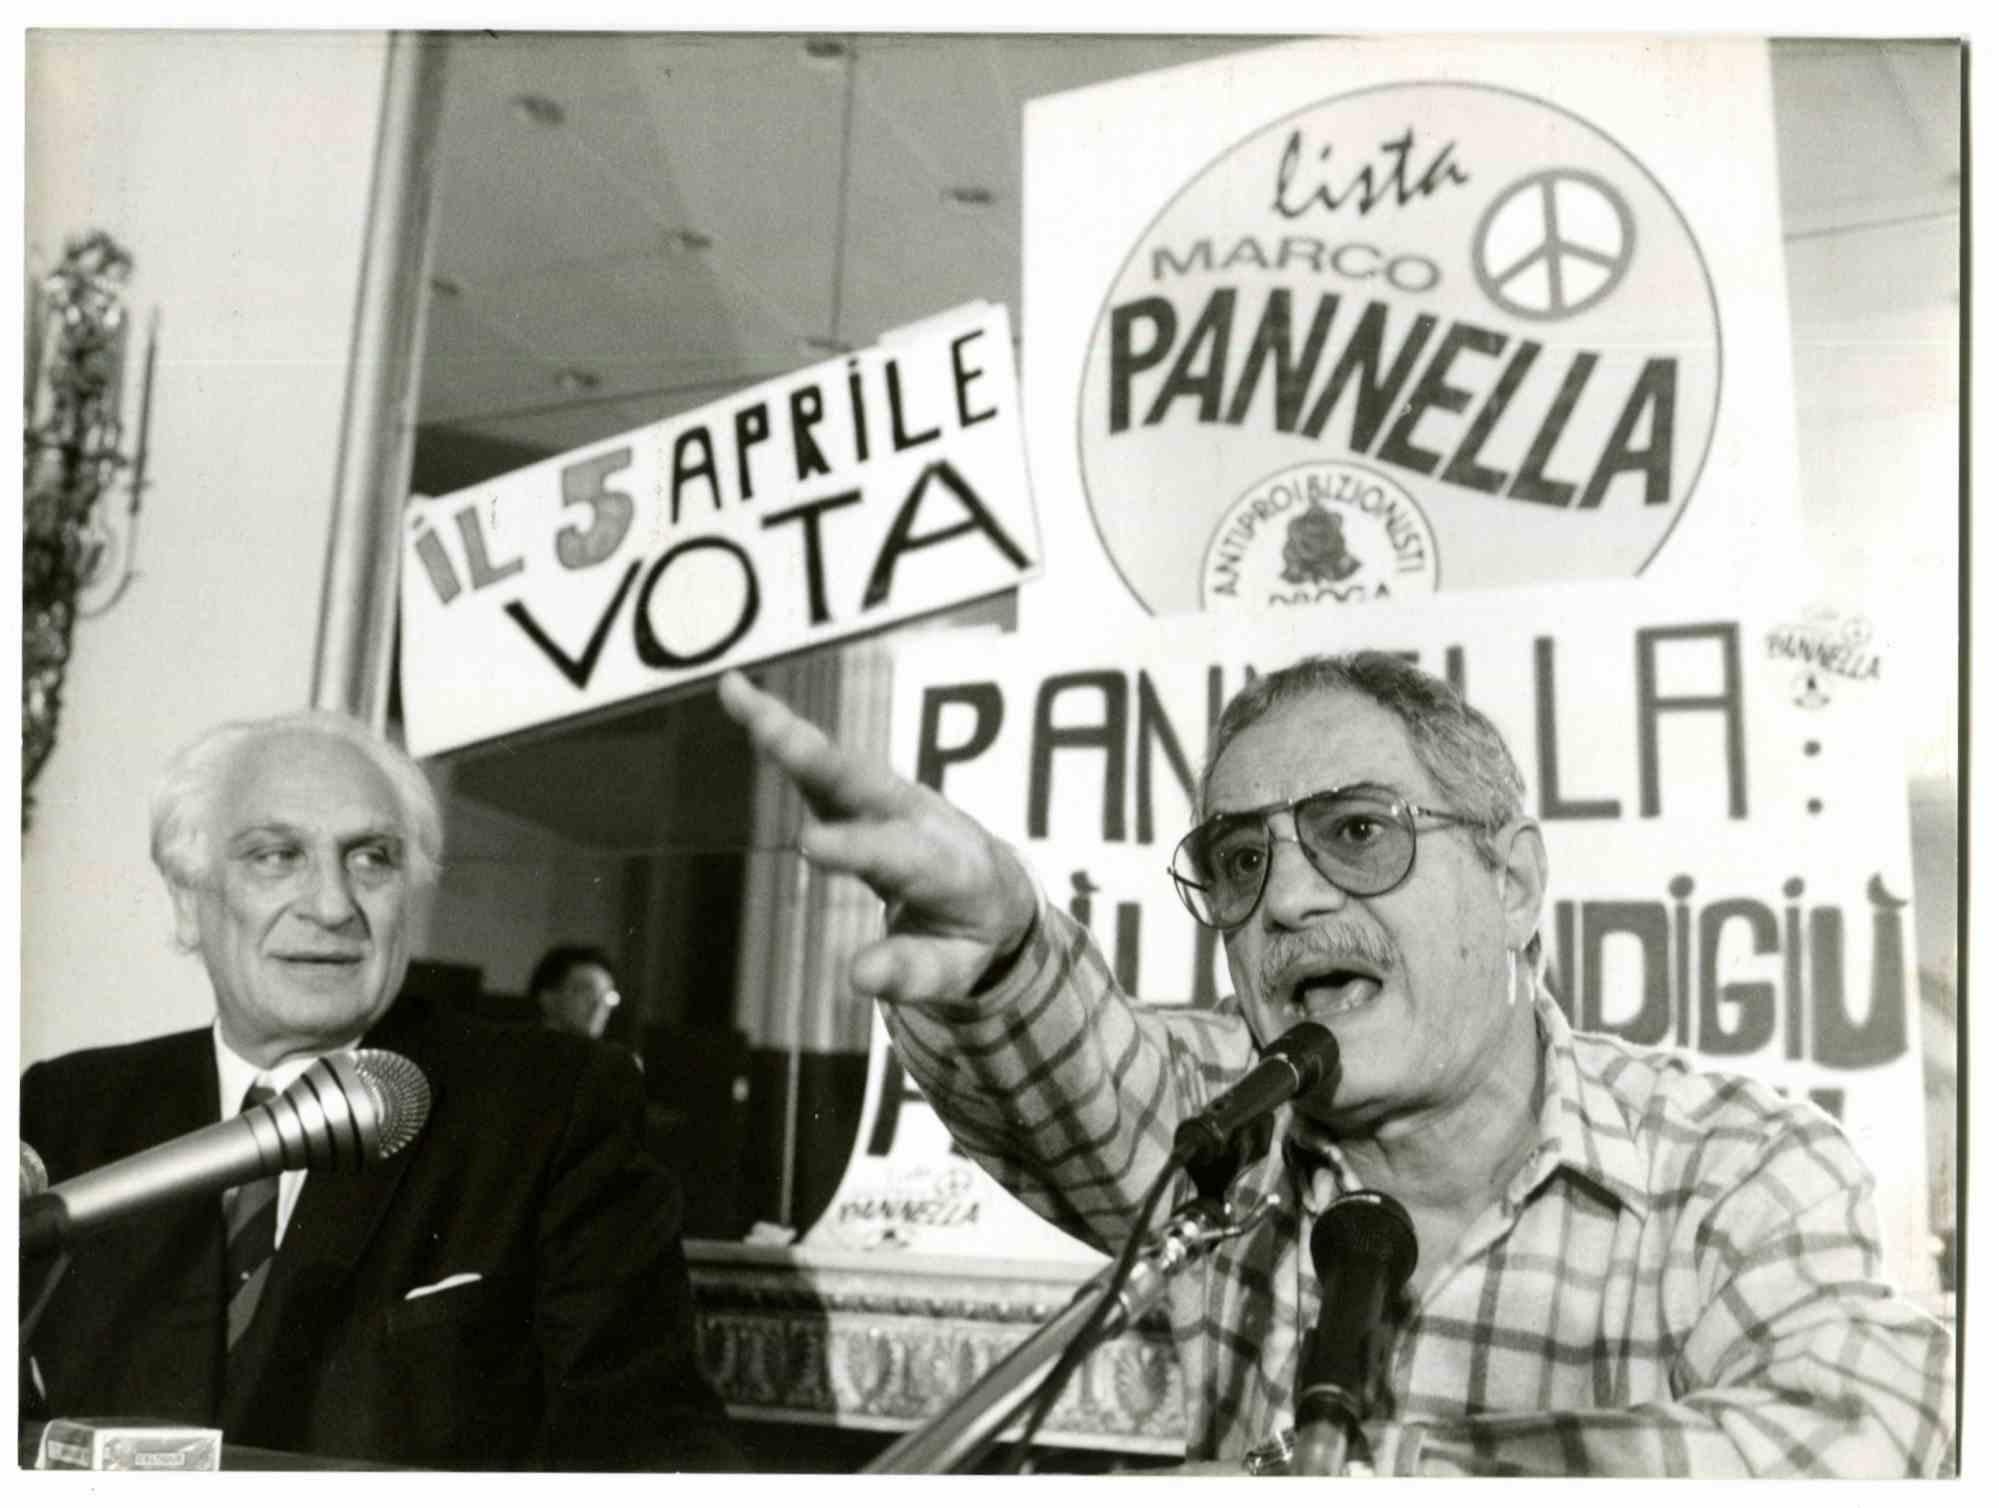 Nino Manfredi and Marco Pannella - 1970s